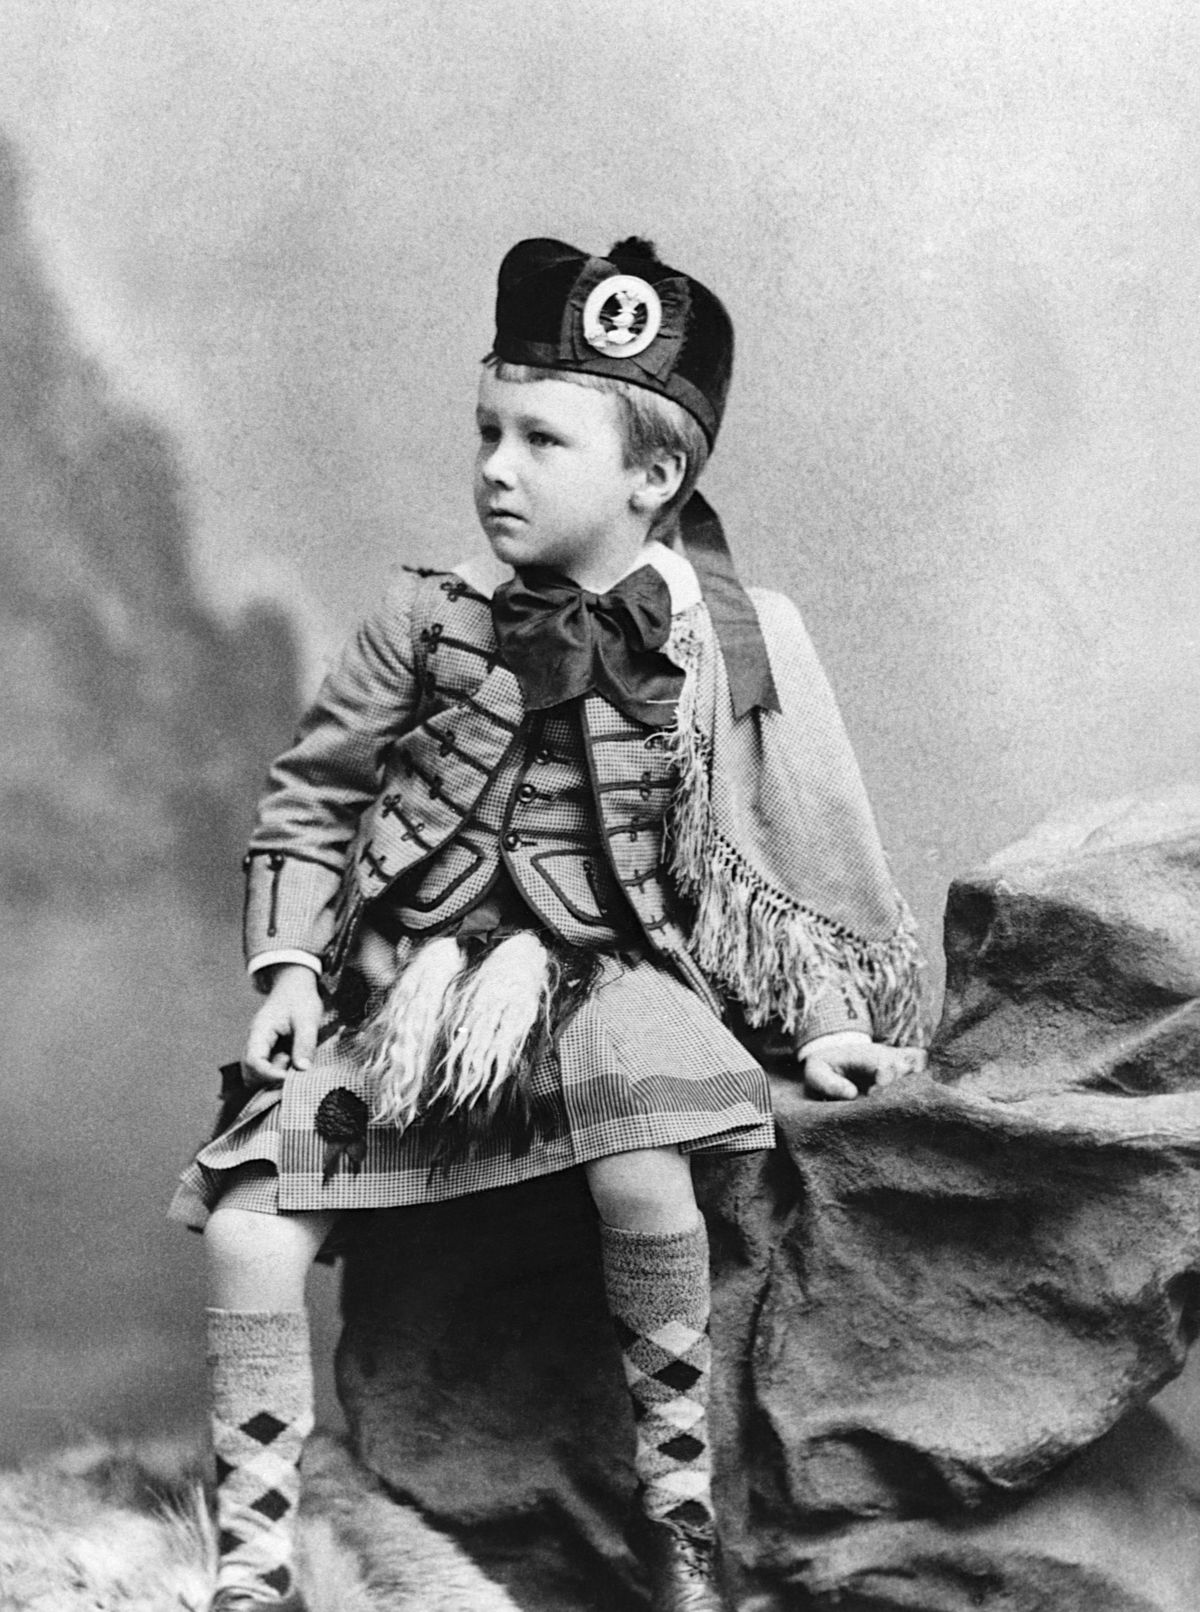 Franklin D. Roosevelt at age 5